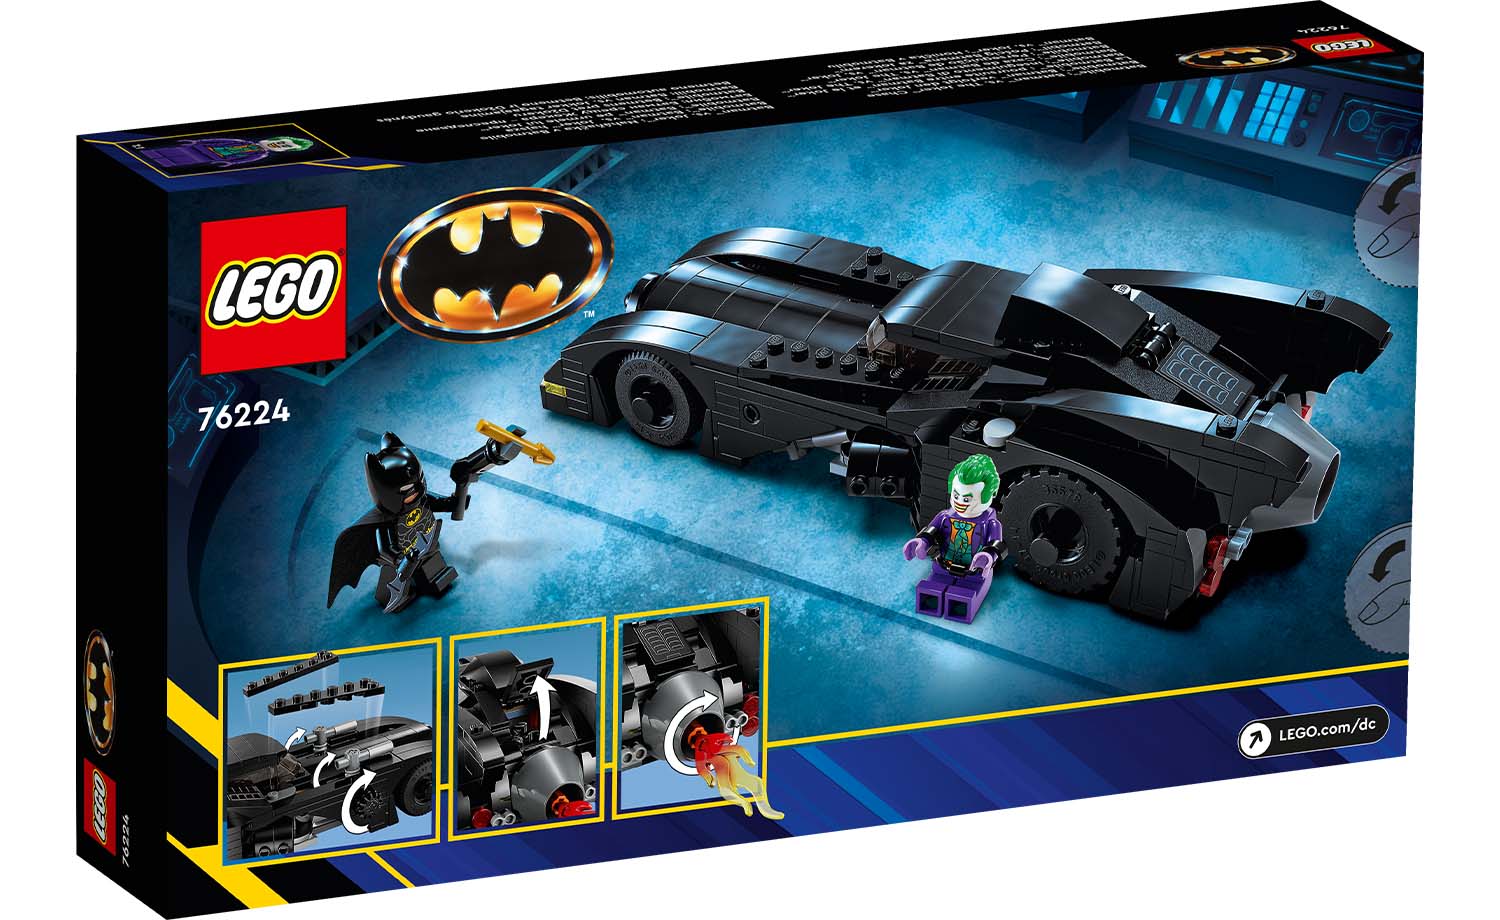 LEGO Batman™ e DC: Vendita Online Set LEGO dedicati a Batman